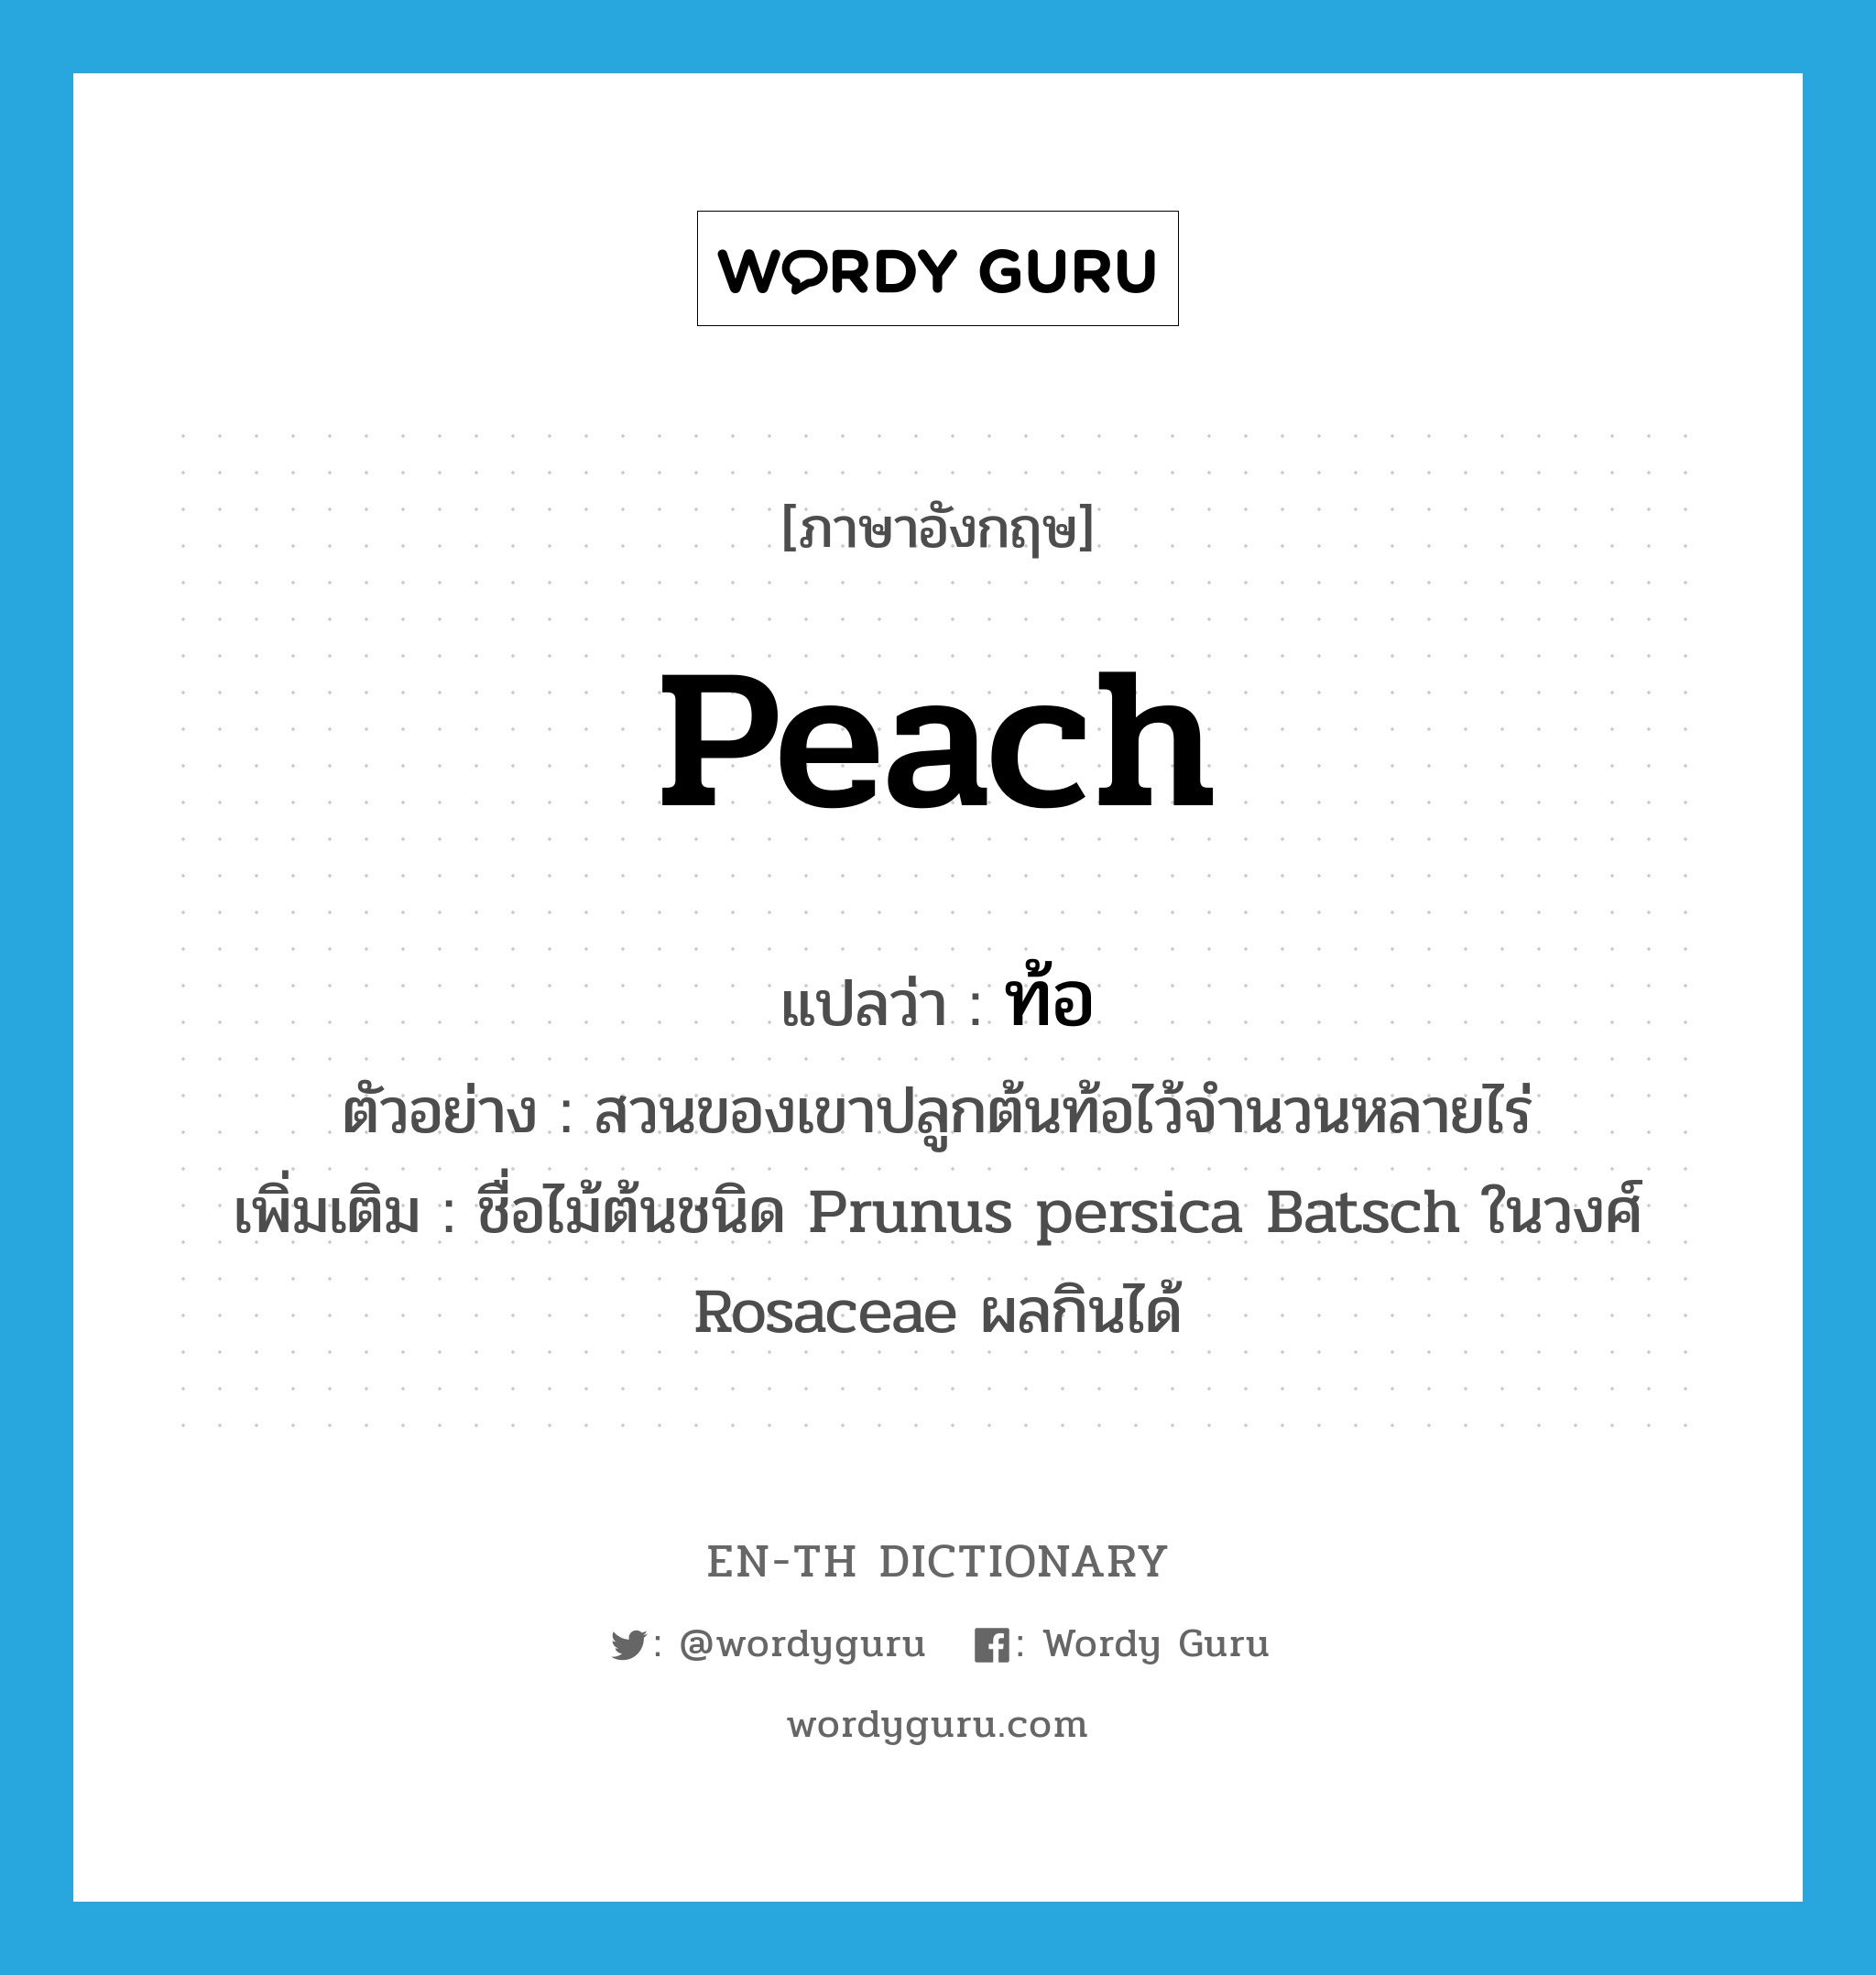 ท้อ ภาษาอังกฤษ?, คำศัพท์ภาษาอังกฤษ ท้อ แปลว่า peach ประเภท N ตัวอย่าง สวนของเขาปลูกต้นท้อไว้จำนวนหลายไร่ เพิ่มเติม ชื่อไม้ต้นชนิด Prunus persica Batsch ในวงศ์ Rosaceae ผลกินได้ หมวด N